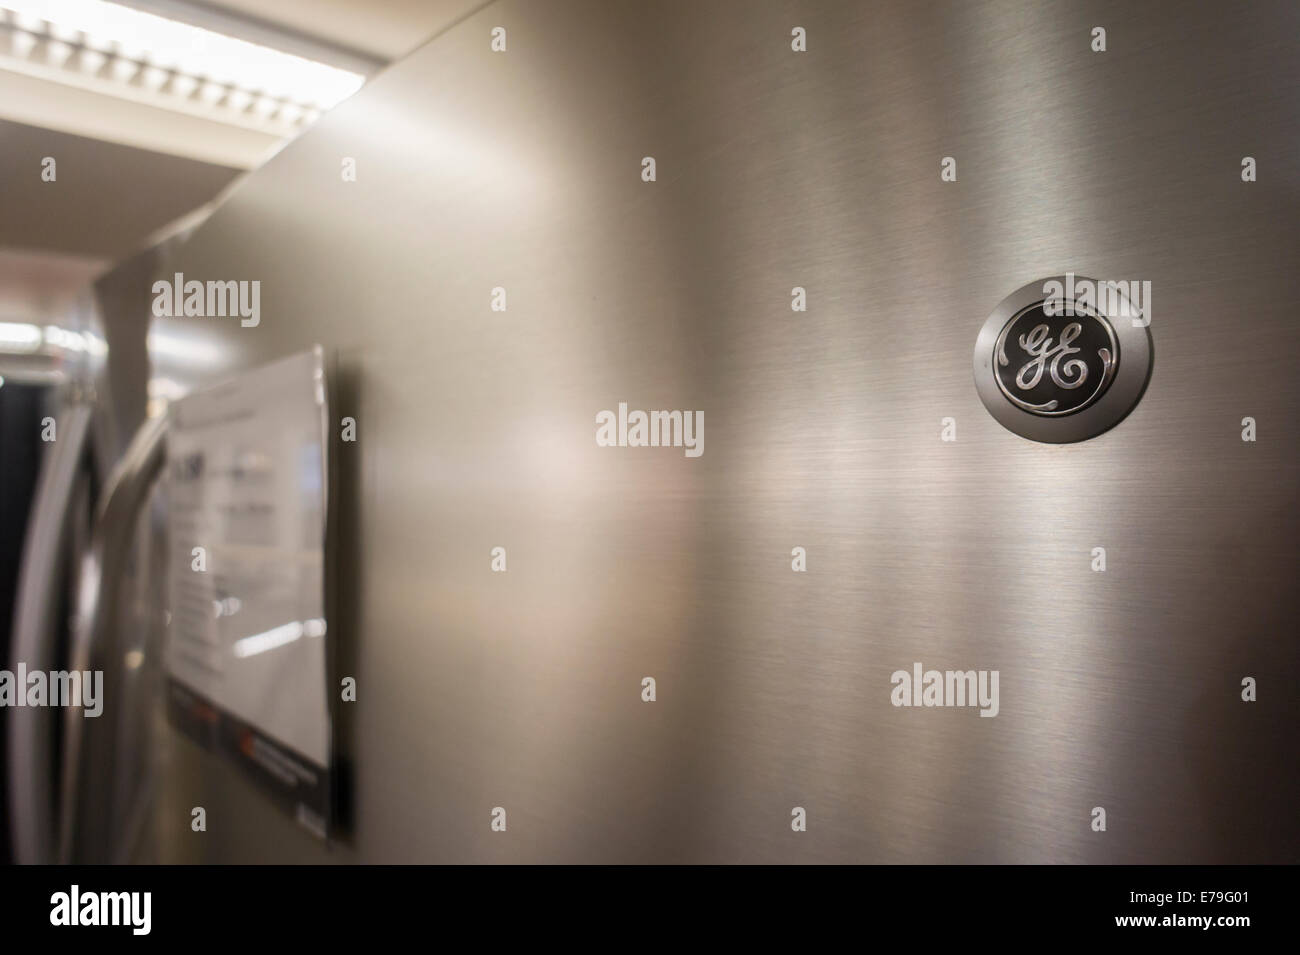 Ein General Electric Kühlschrank in einem Home Depot in New York  Stockfotografie - Alamy